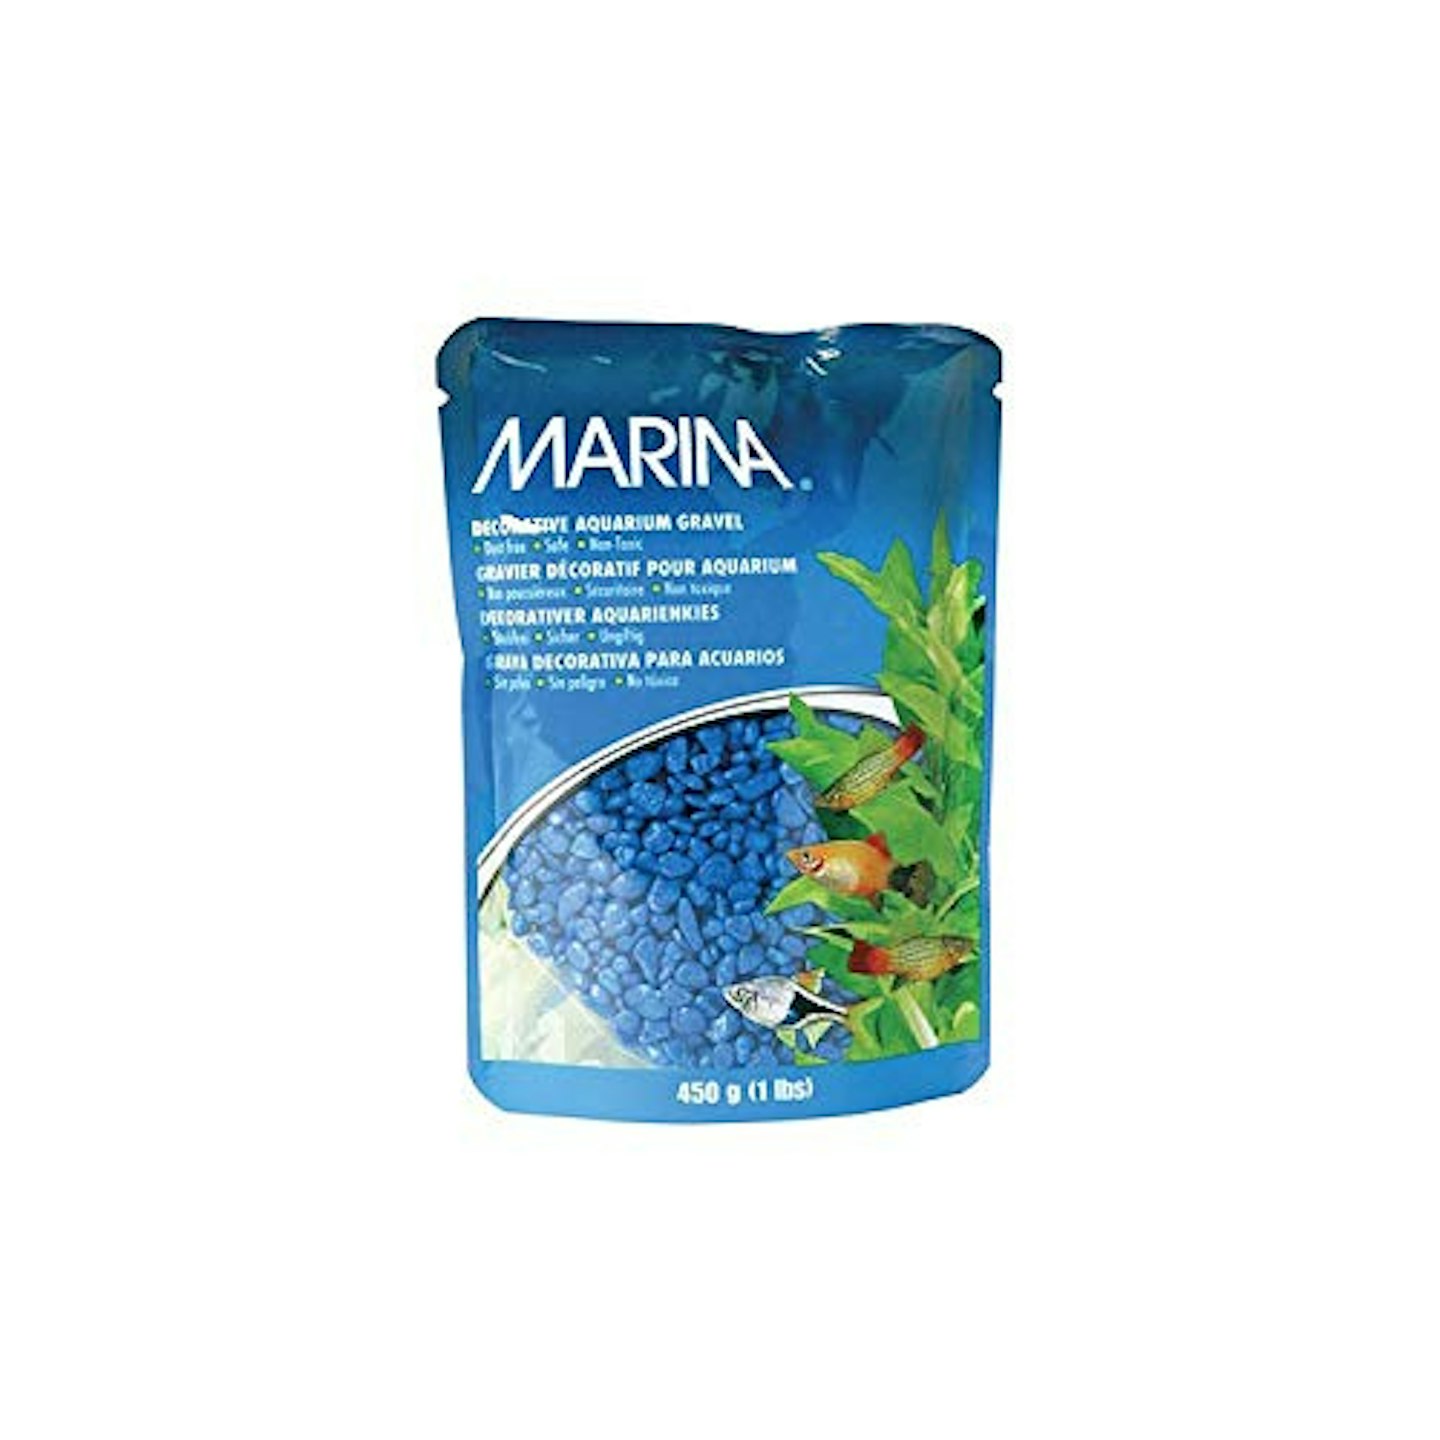 Marina Decorative Aquarium Gravel, 450 g